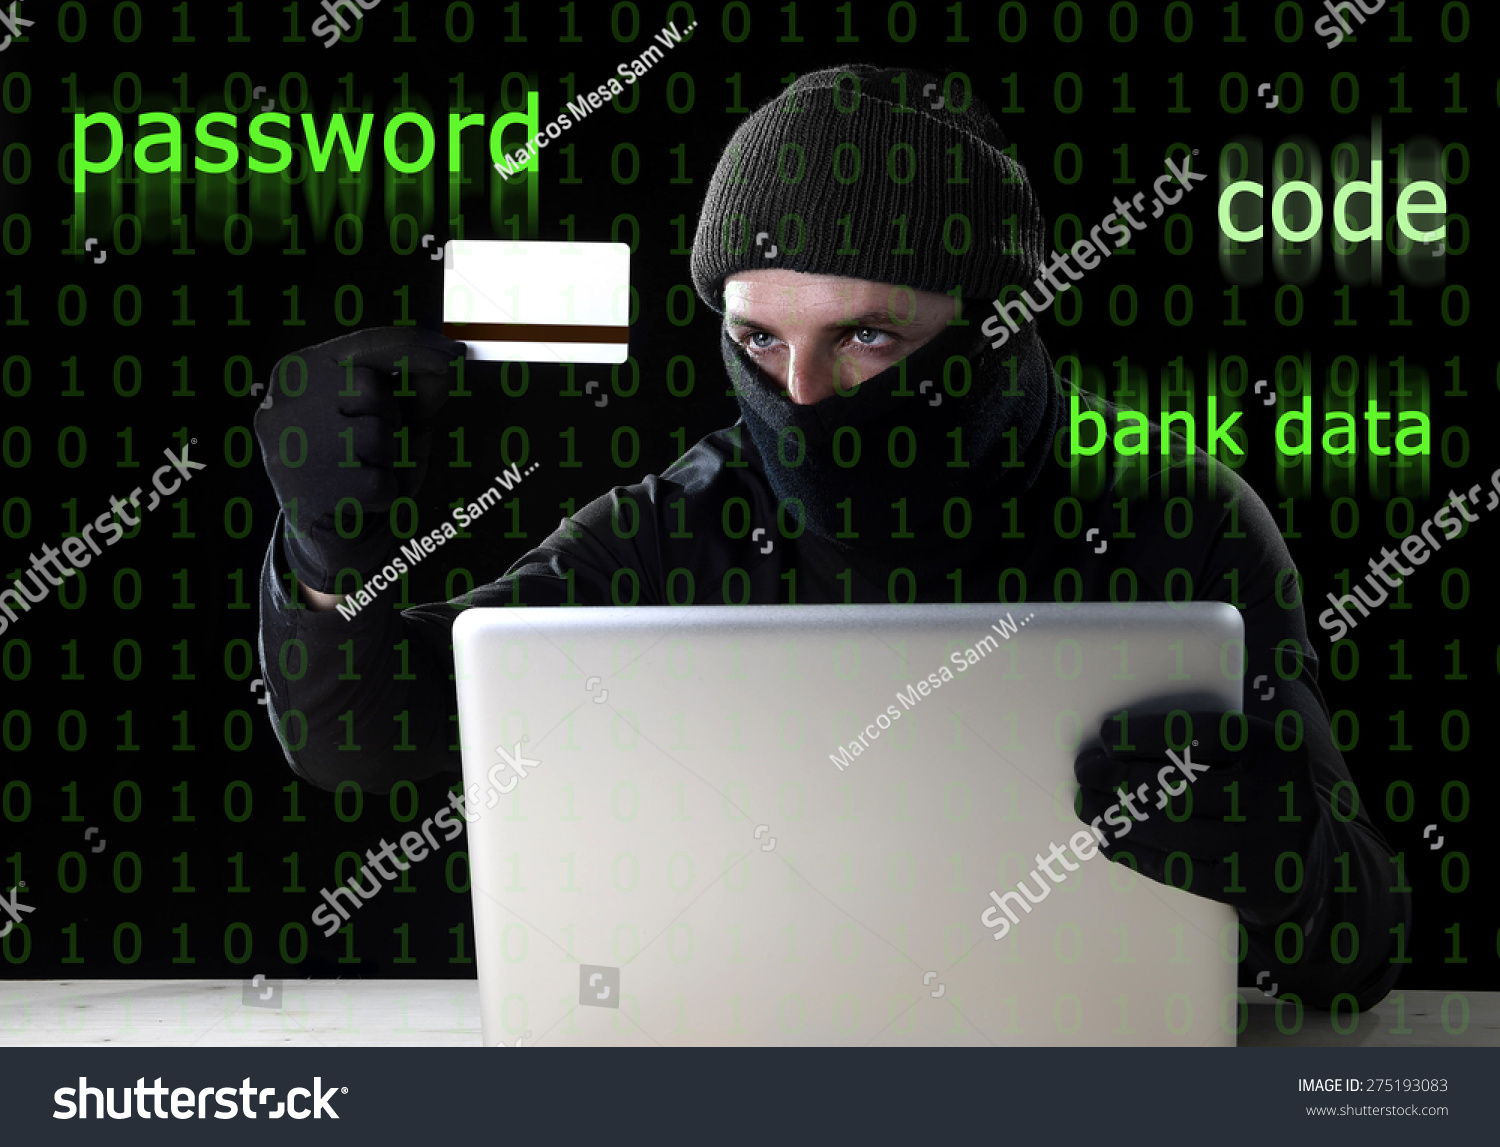 用卡使用电脑笔记本电脑进行犯罪活动的黑客密